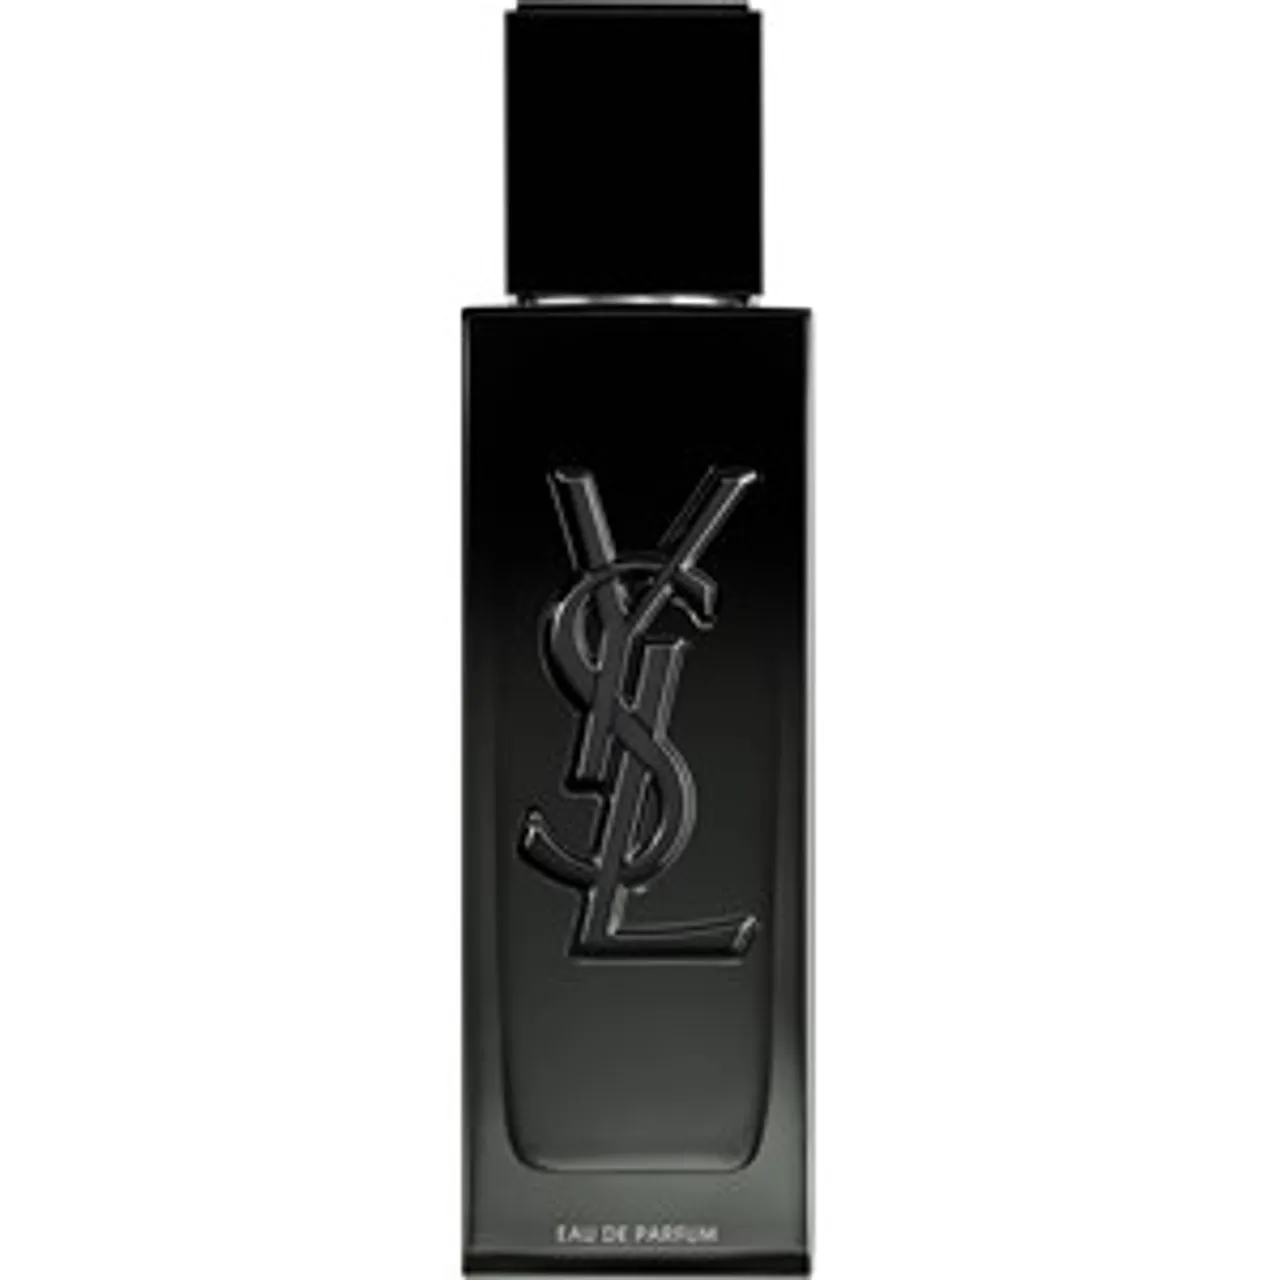 Yves Saint Laurent Eau de Parfum Spray 1 60 ml